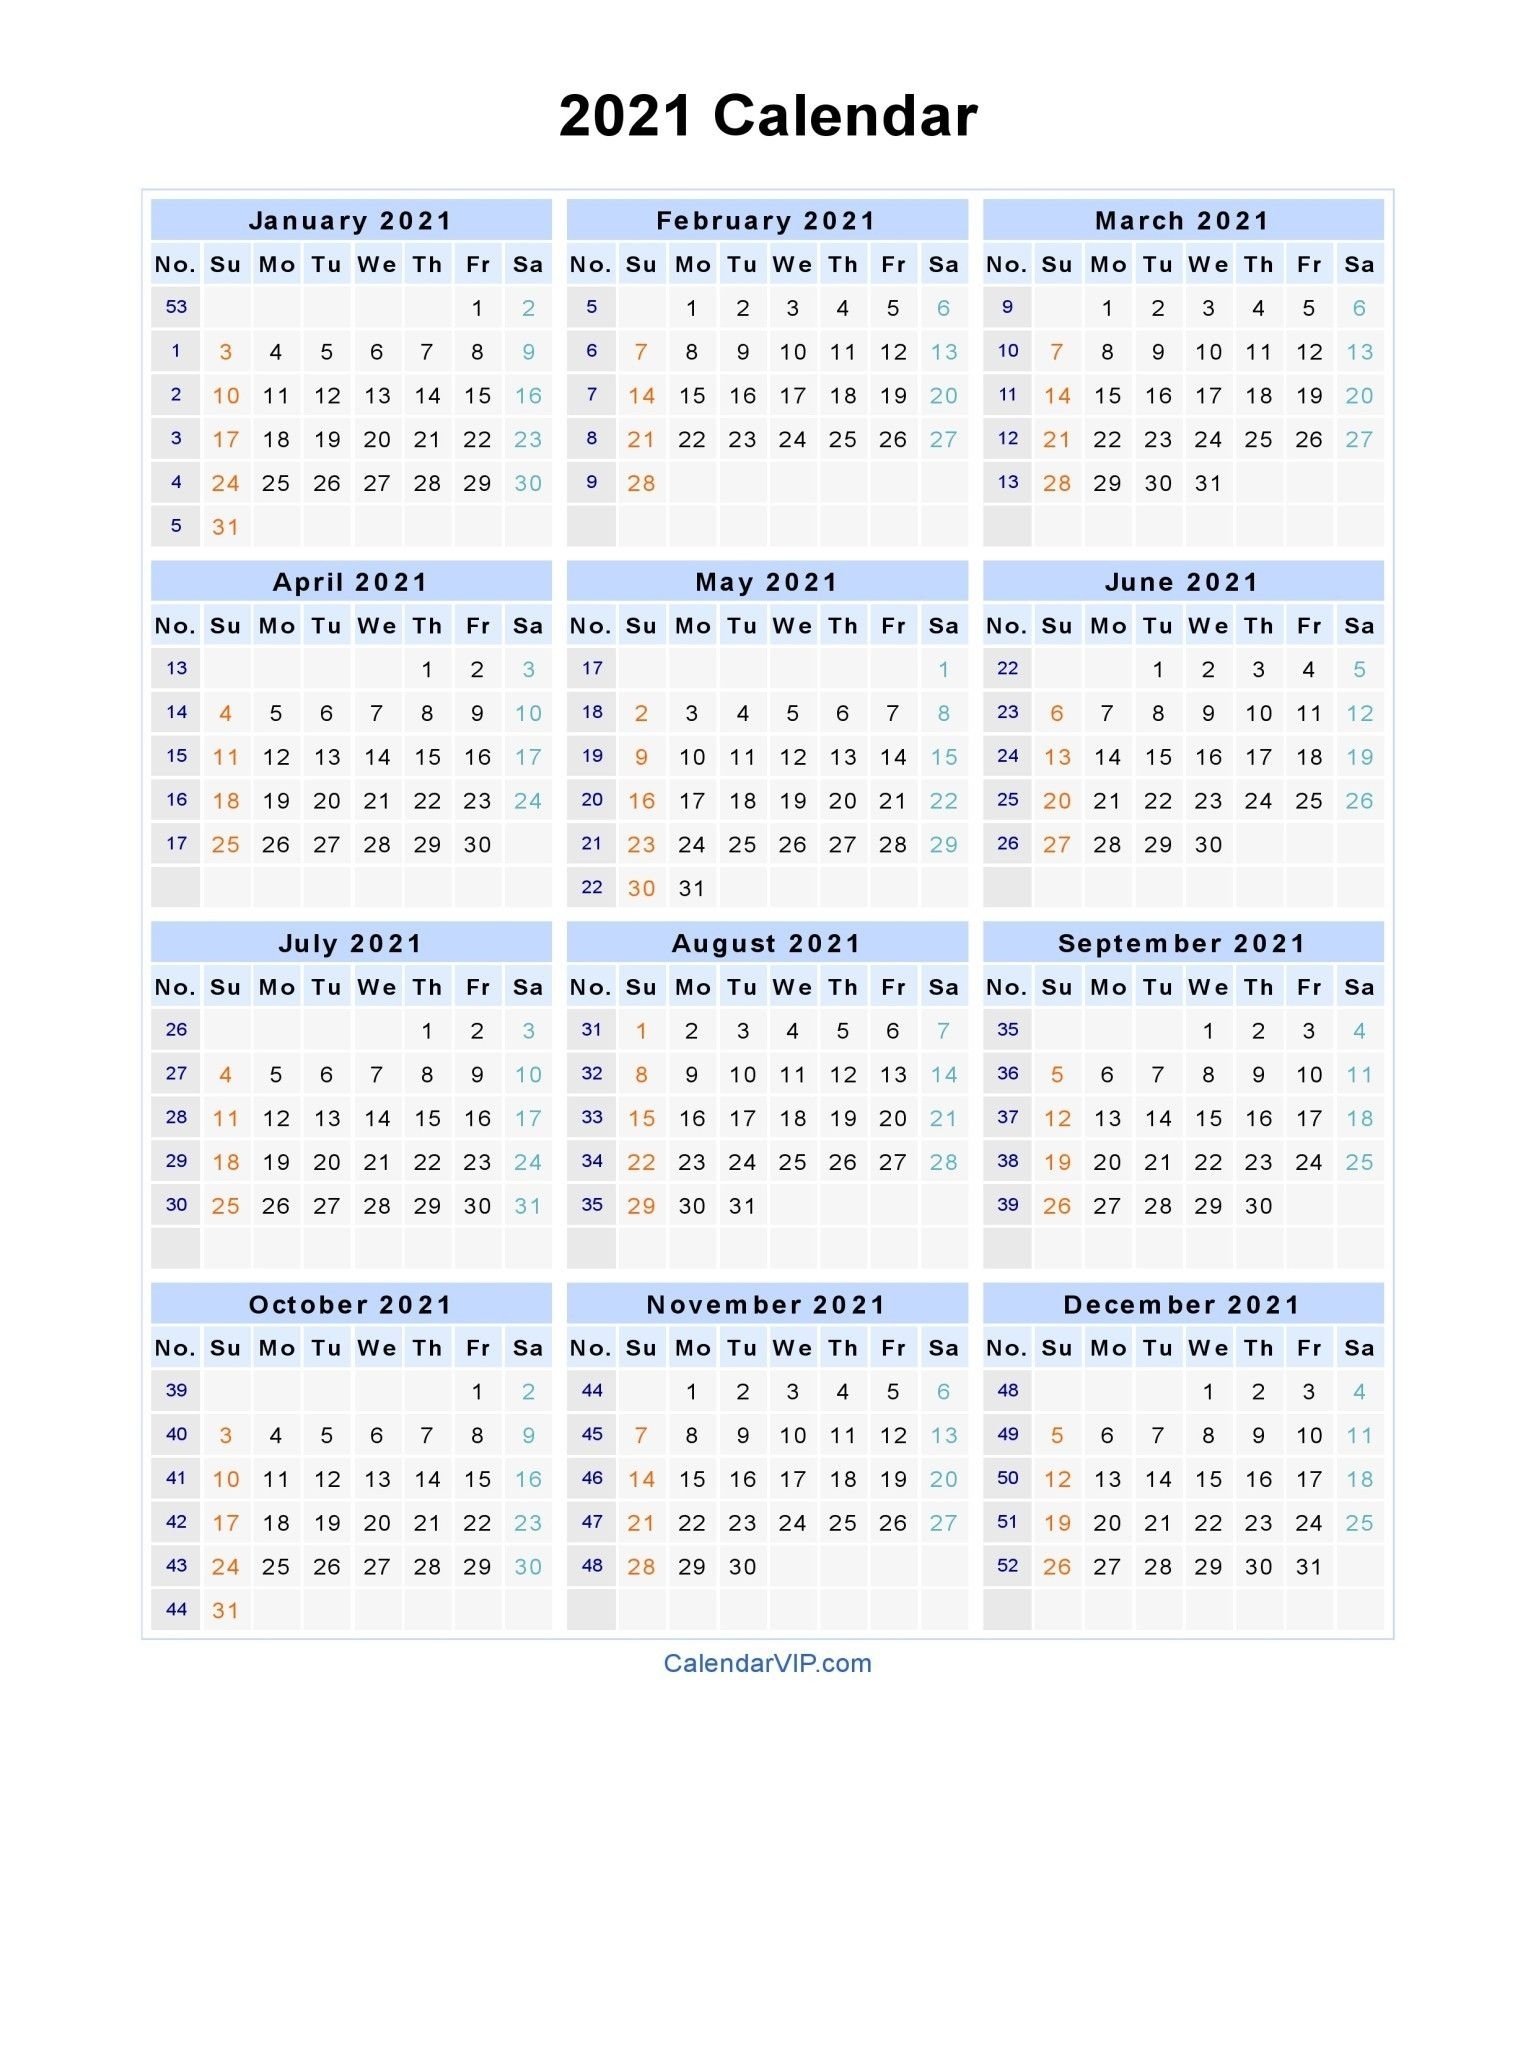 Get 2021 Financial Calendar With Week Numbers